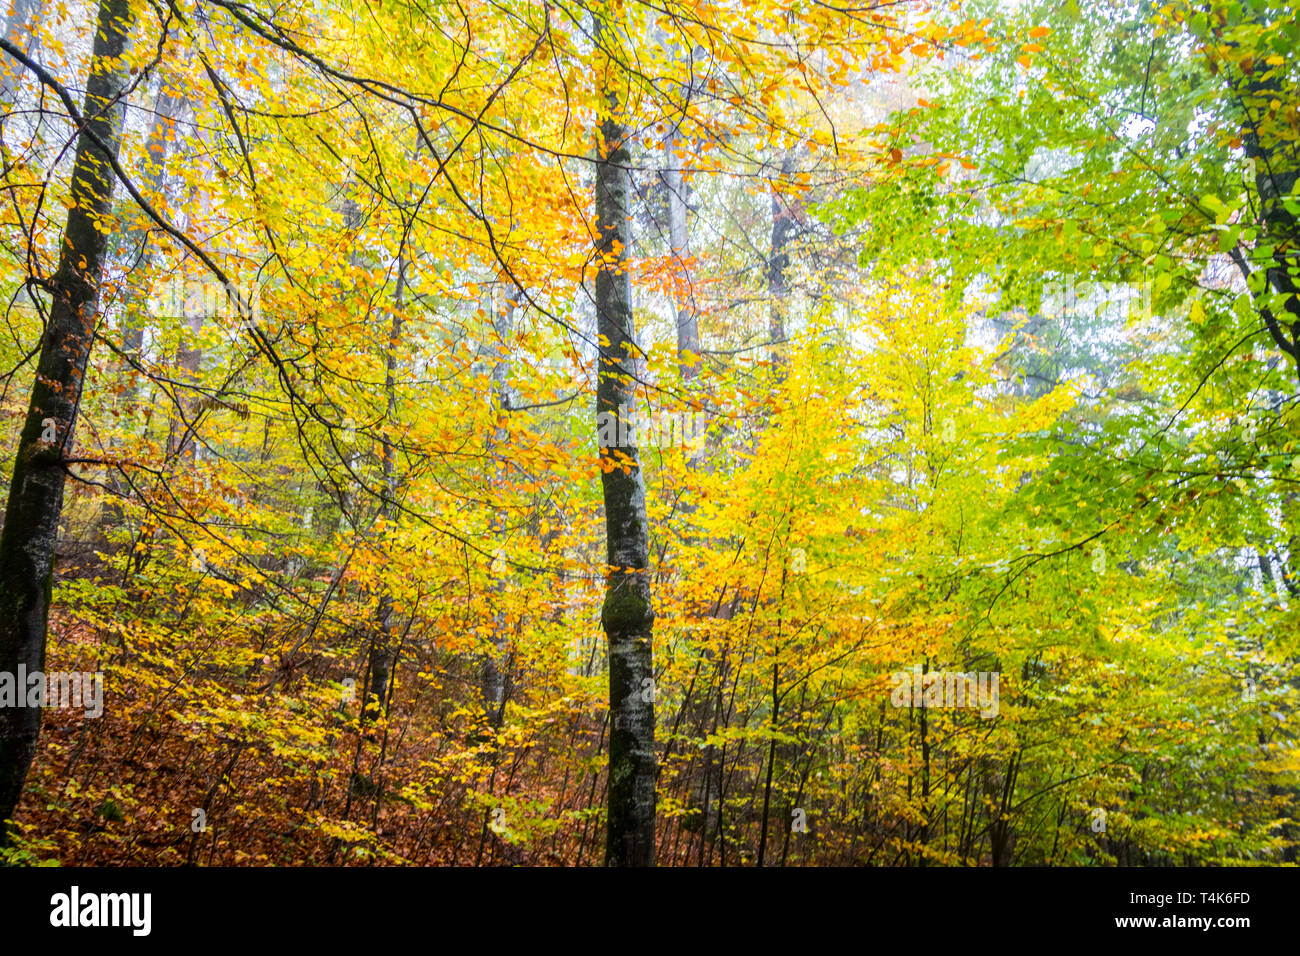 Wald Laub, hohen Bäumen, nebligen Wald, Dunst, Nebel, Herbst Farben, Isolation Konzept, isolierten Konzept, mitten in der Natur, Deutschland Stockfoto